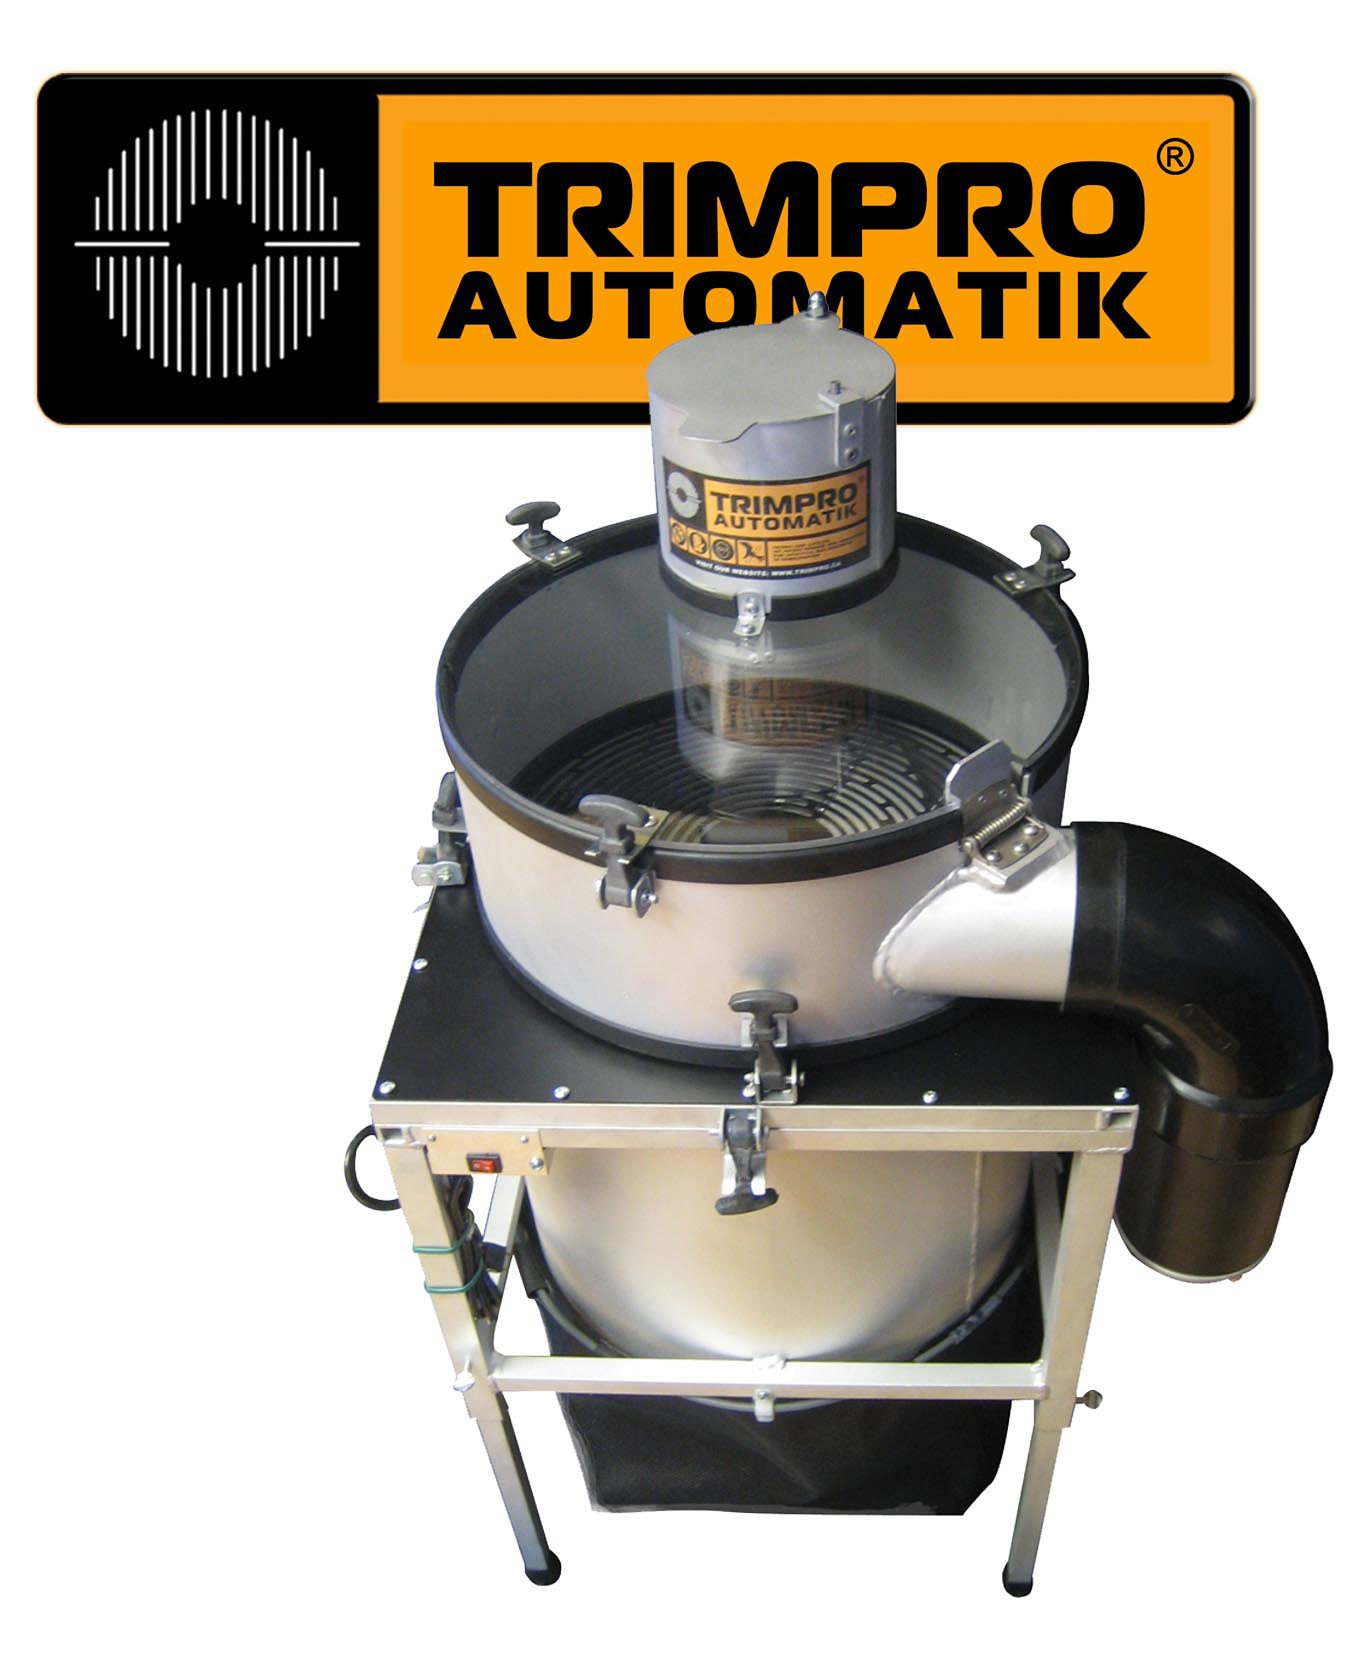 TRIMPRO Automatik Trimmer